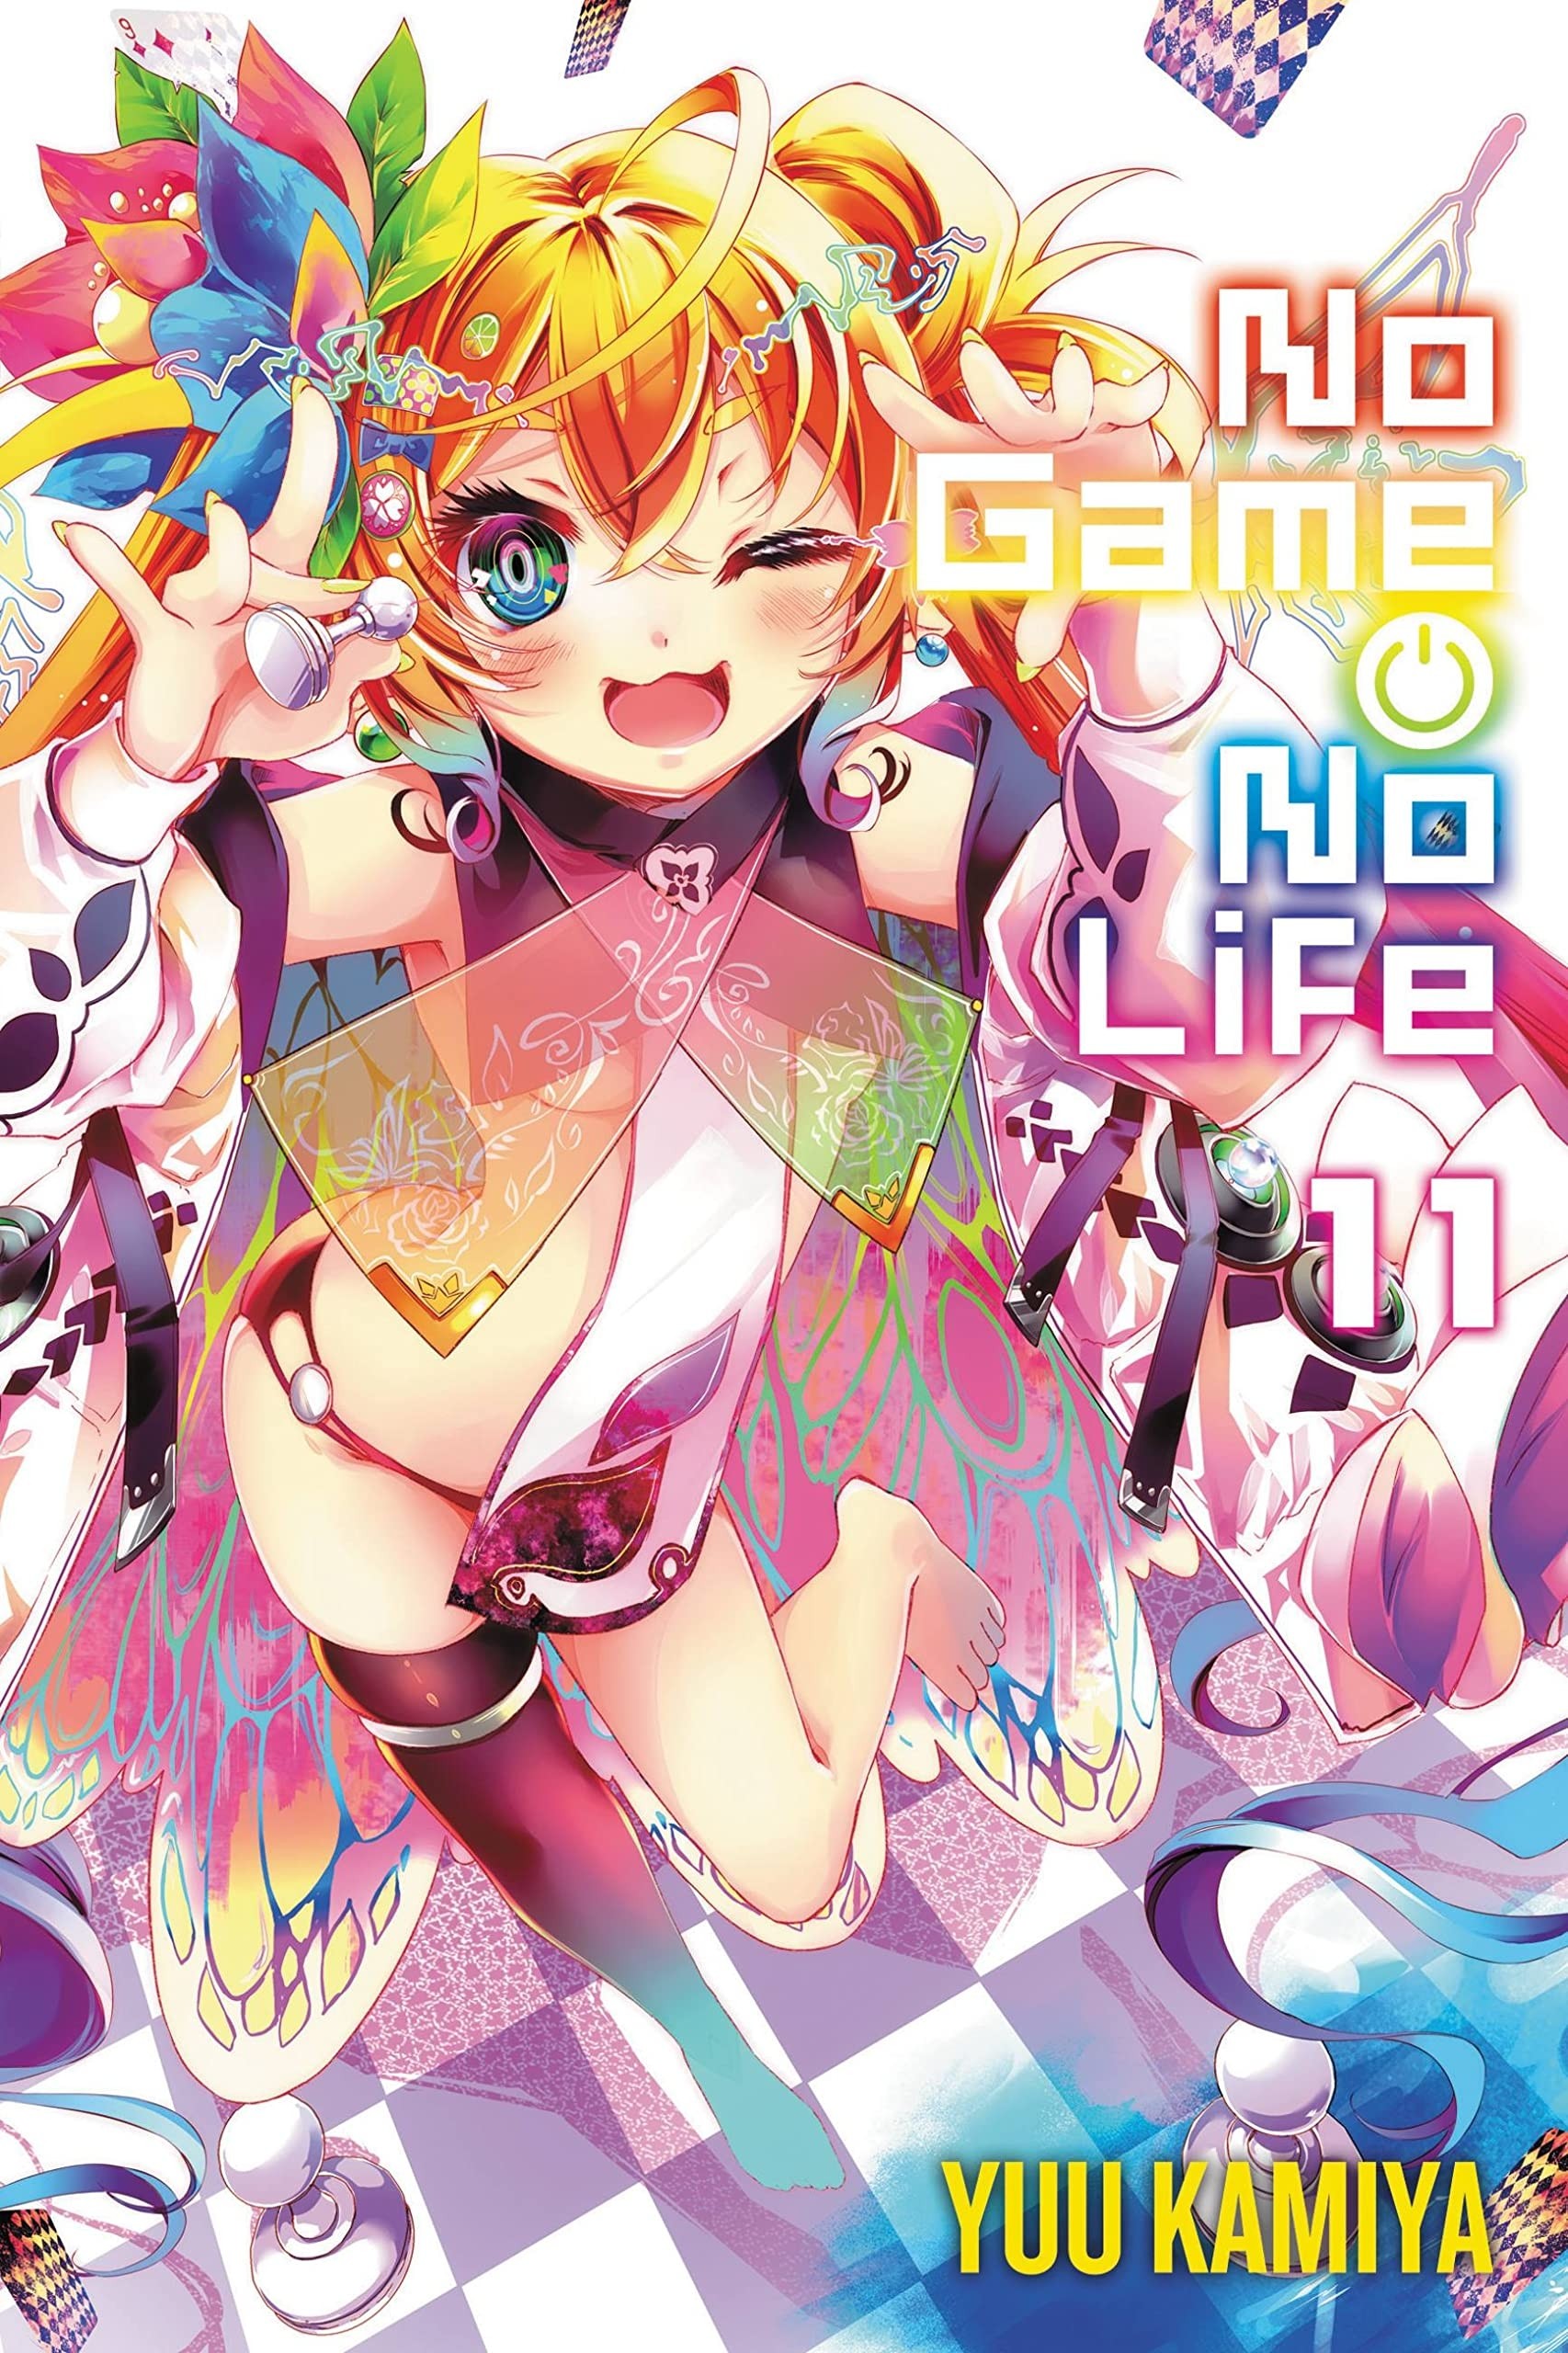 No Game No Life (Light Novel), Vol. 11